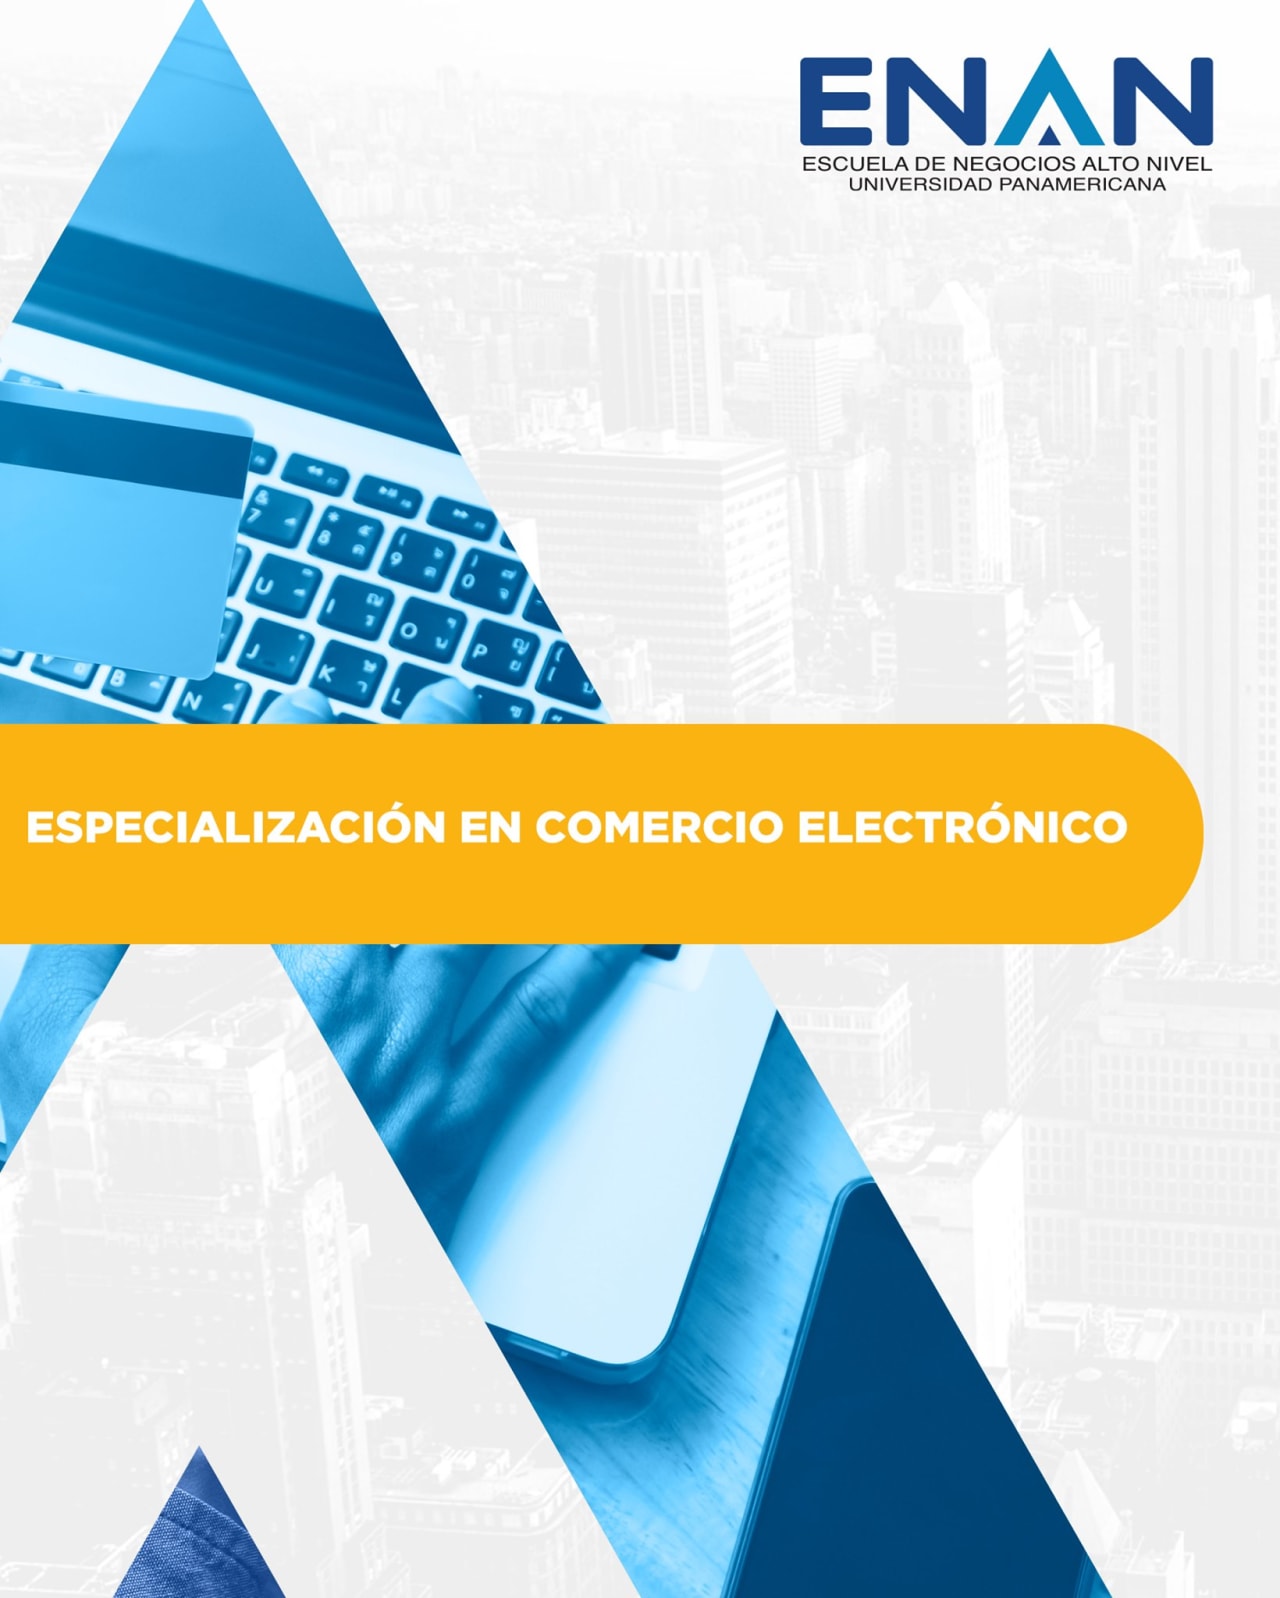 Escuela de Negocios Alto Nivel - Universidad Panamericana de Guatemala Ειδίκευση ηλεκτρονικού εμπορίου